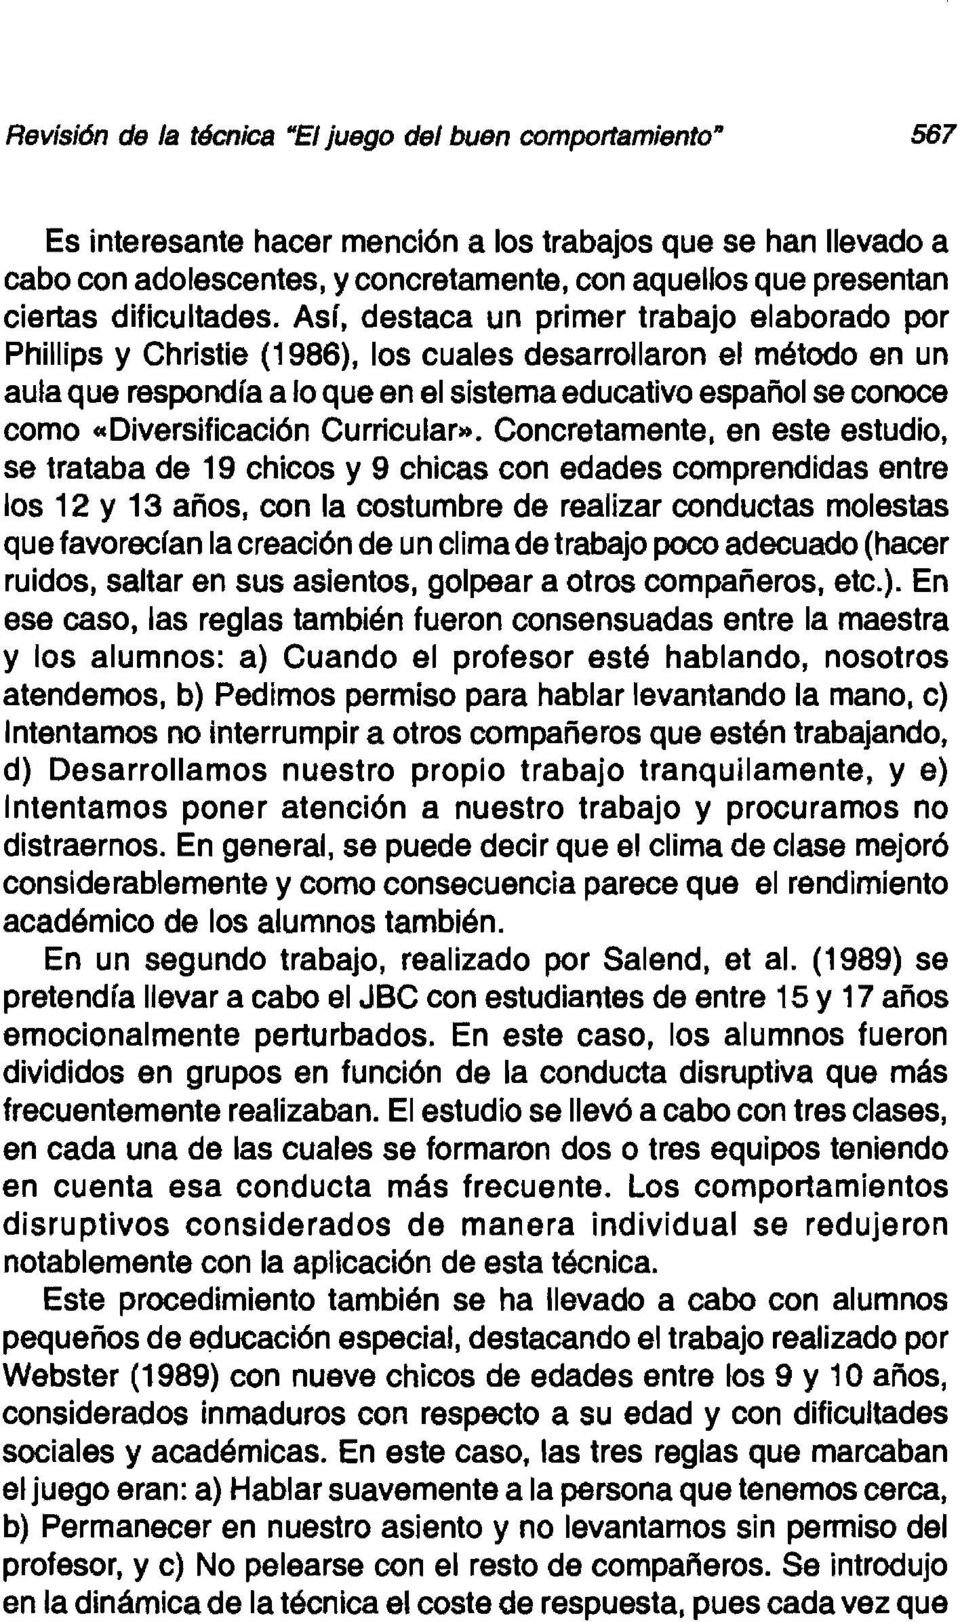 Asr, destaca un primer trabajo elaborado por Phillips y Christie (1986), los cuales desarrollaron el método en un aula que respondía a lo que en el sistema educativo español se conoce como